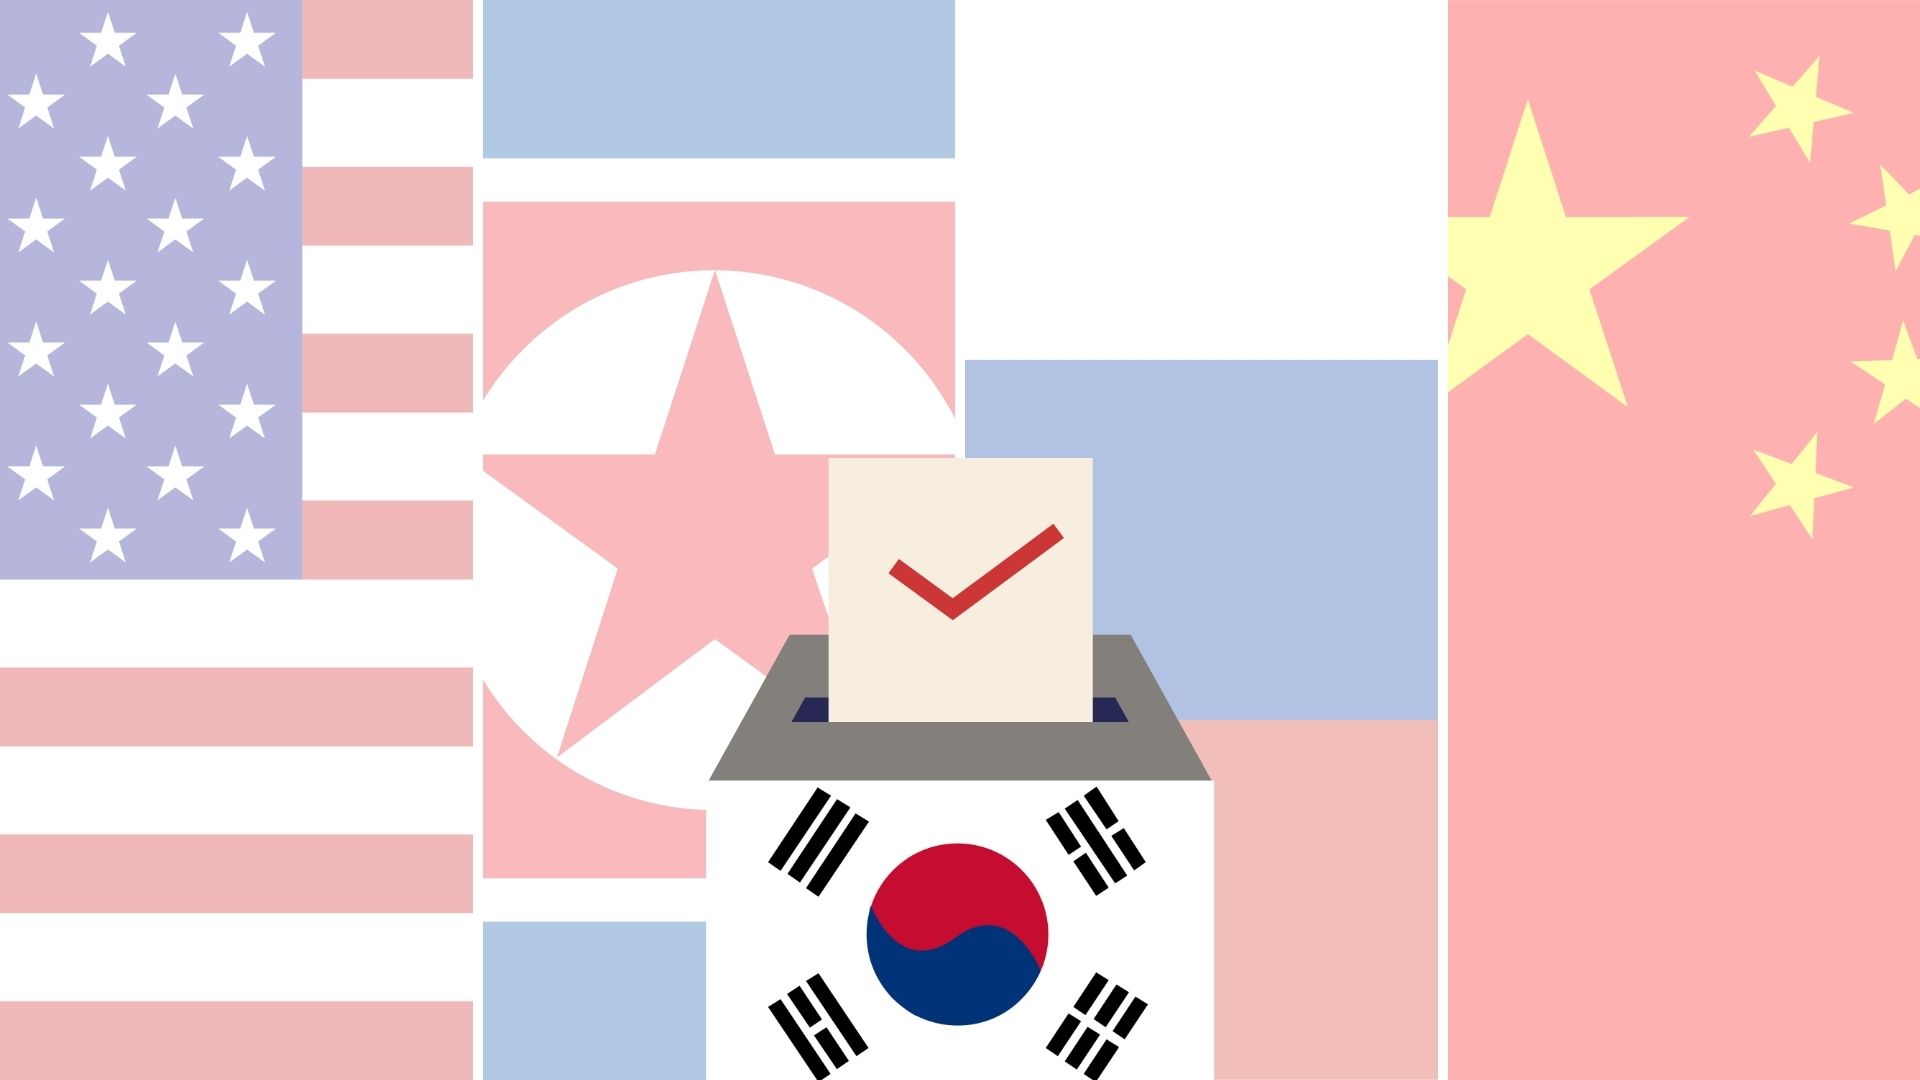 [가짜뉴스와 민주주의 시리즈] ④ 한국의 외국선거방해(Foreign Electoral Interference)에 대한 인식과 현황